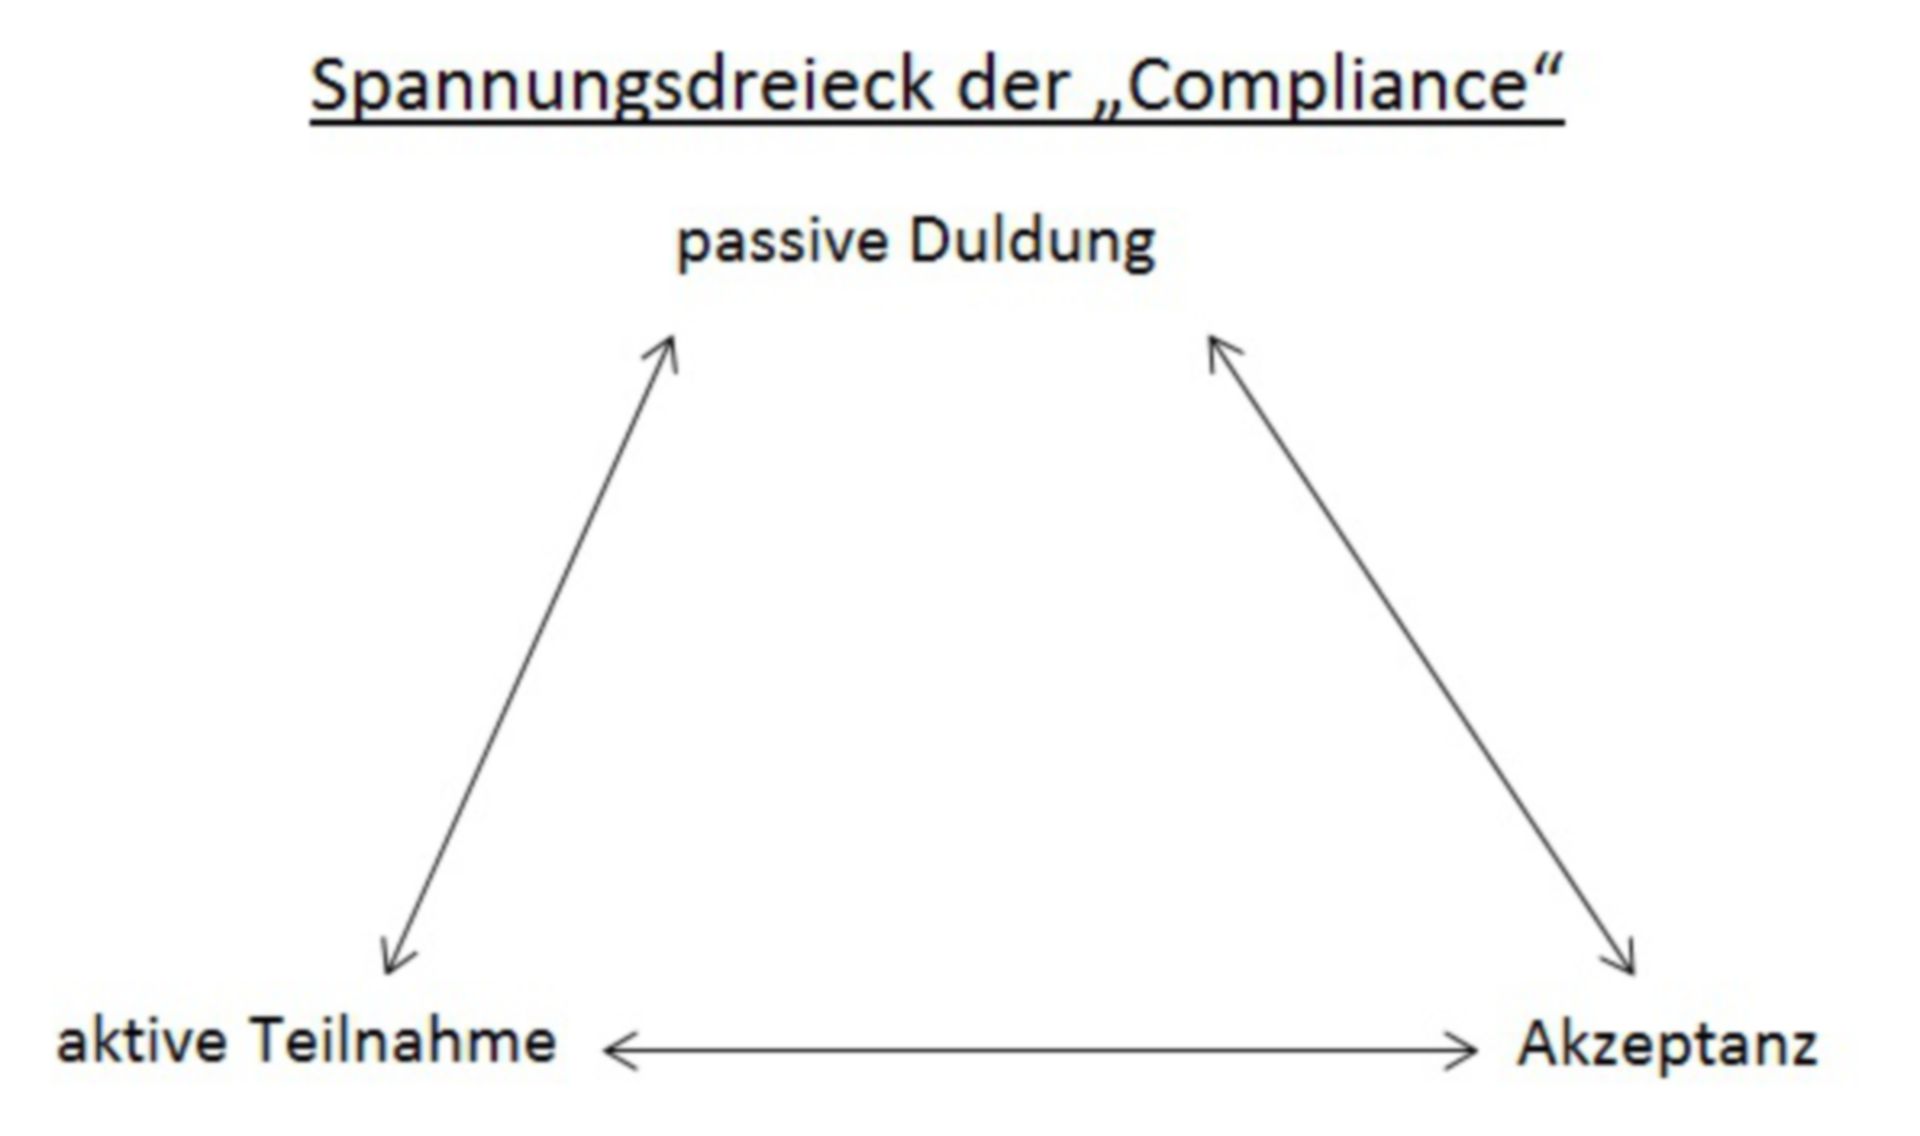 Il triangolo di tensione di conformità. Suggerimento: tolleranza passiva; in basso a sinistra: la partecipazione attiva; in basso a destra: funzionalità di accettazione.